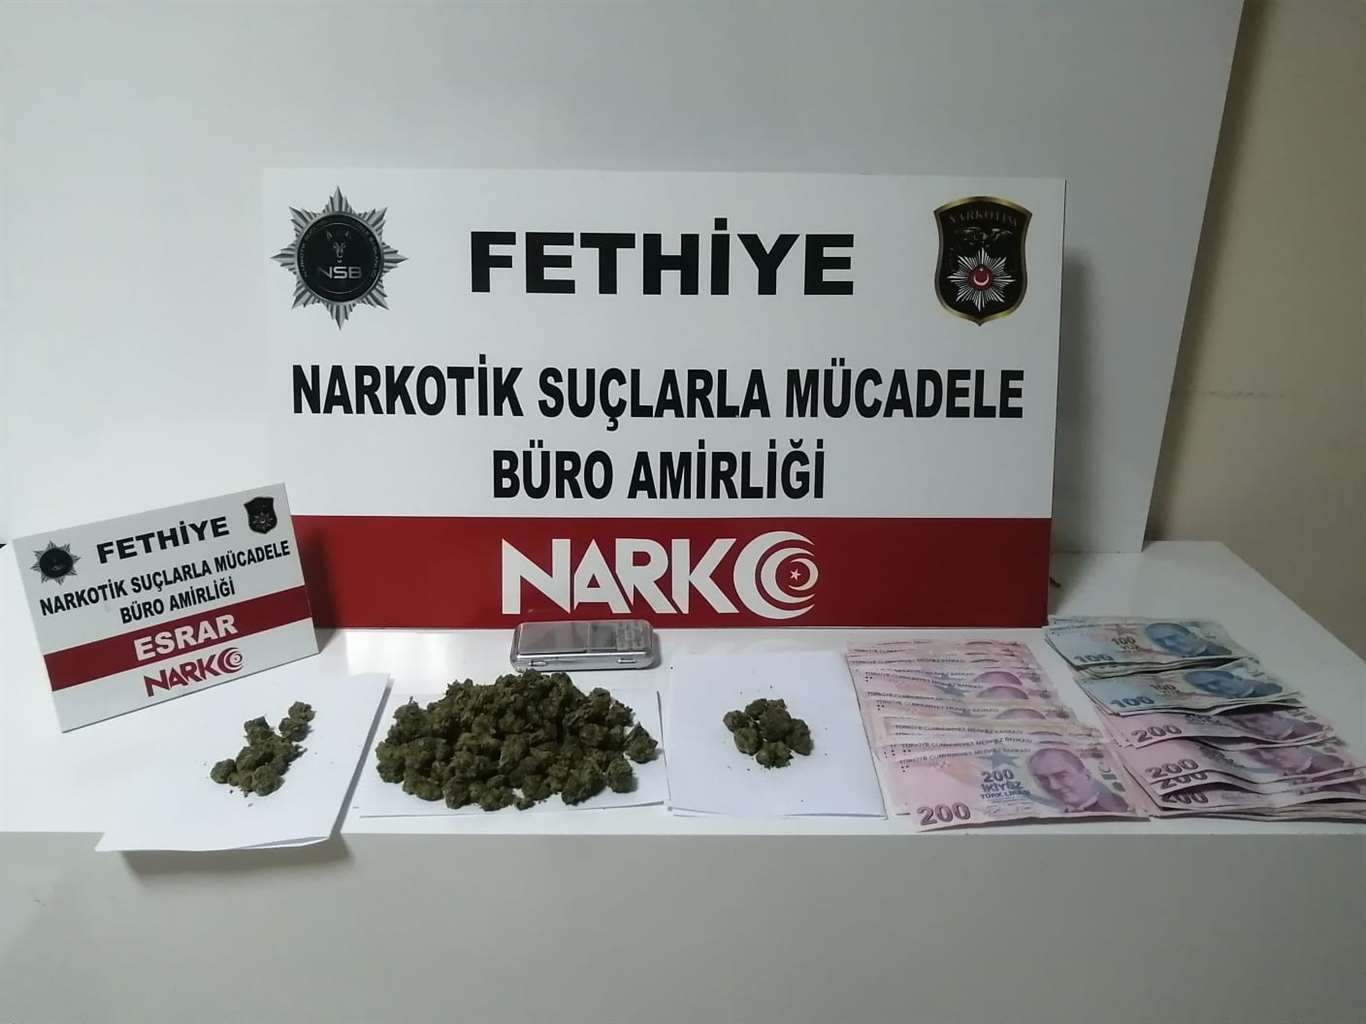 Fethiye'de uyuşturucu operasyonu: 3 tutuklama haberi